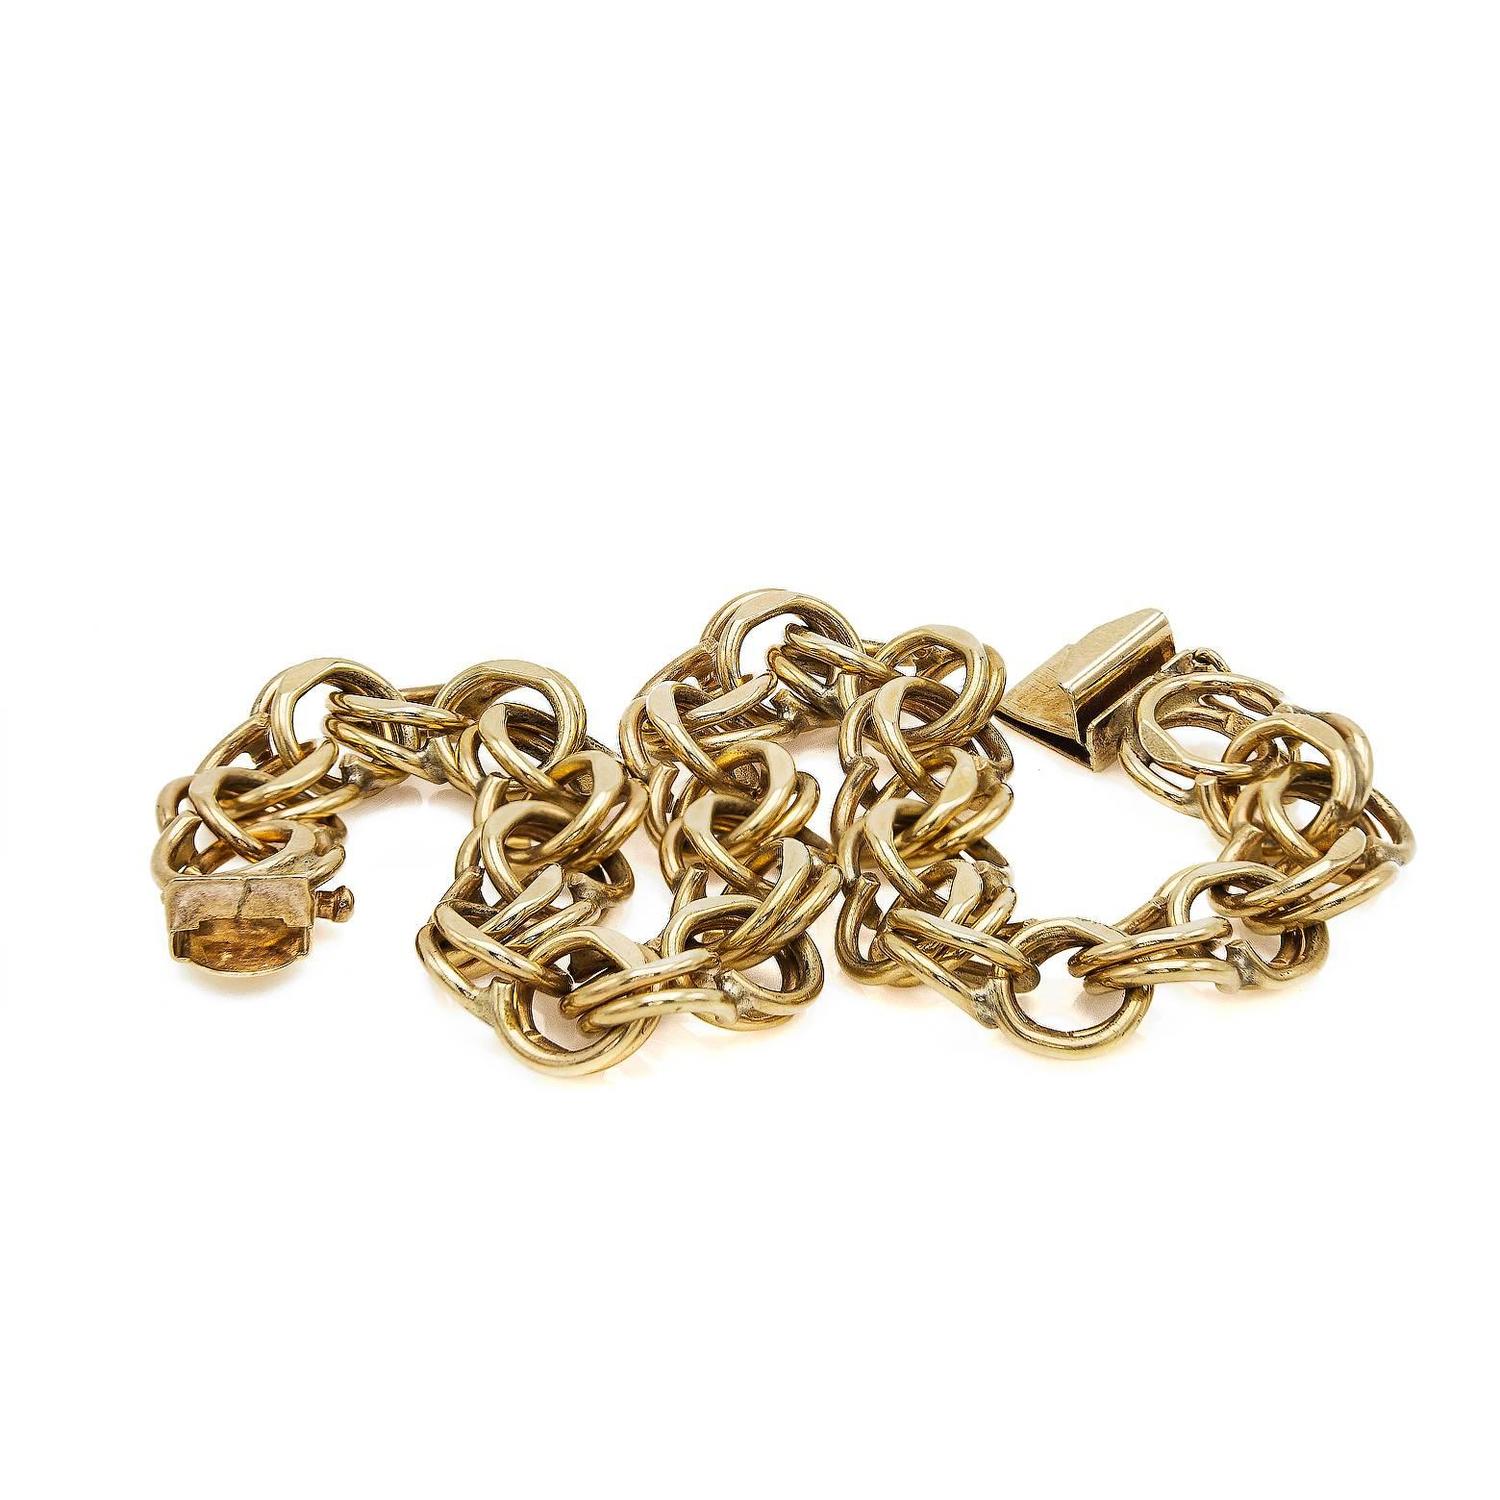 Gold Chain Link Bracelet For Sale at 1stdibs